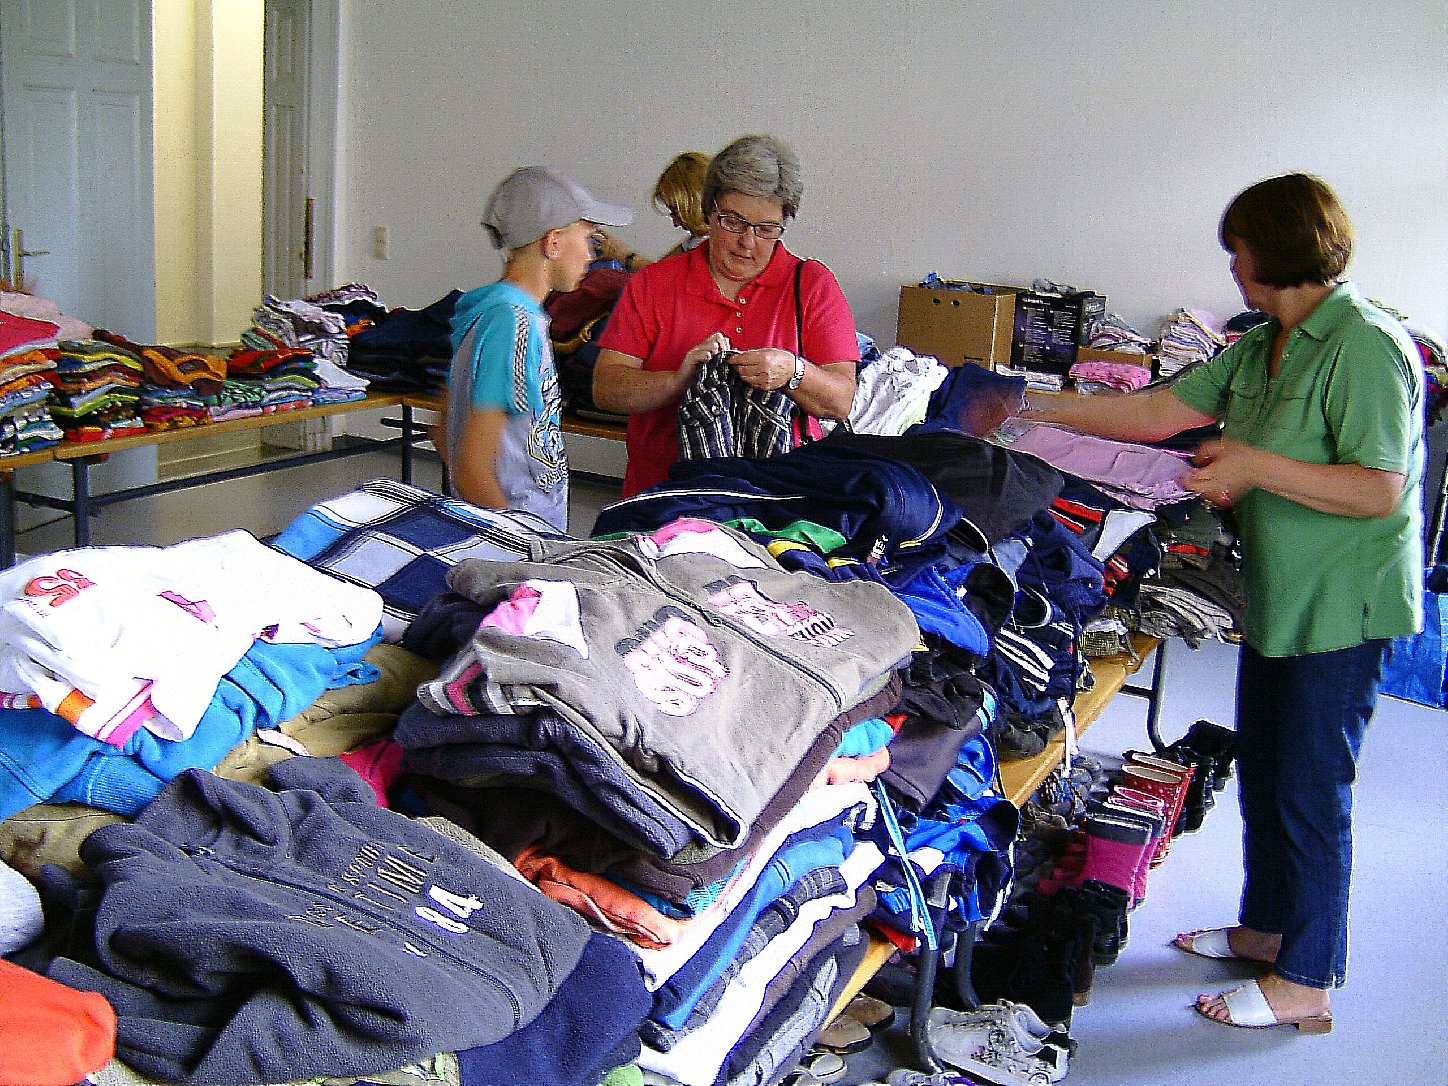 Die Kids können sich wiederin der DRK-Kleiderkammer Kleidung aussuchen. Foto: drk